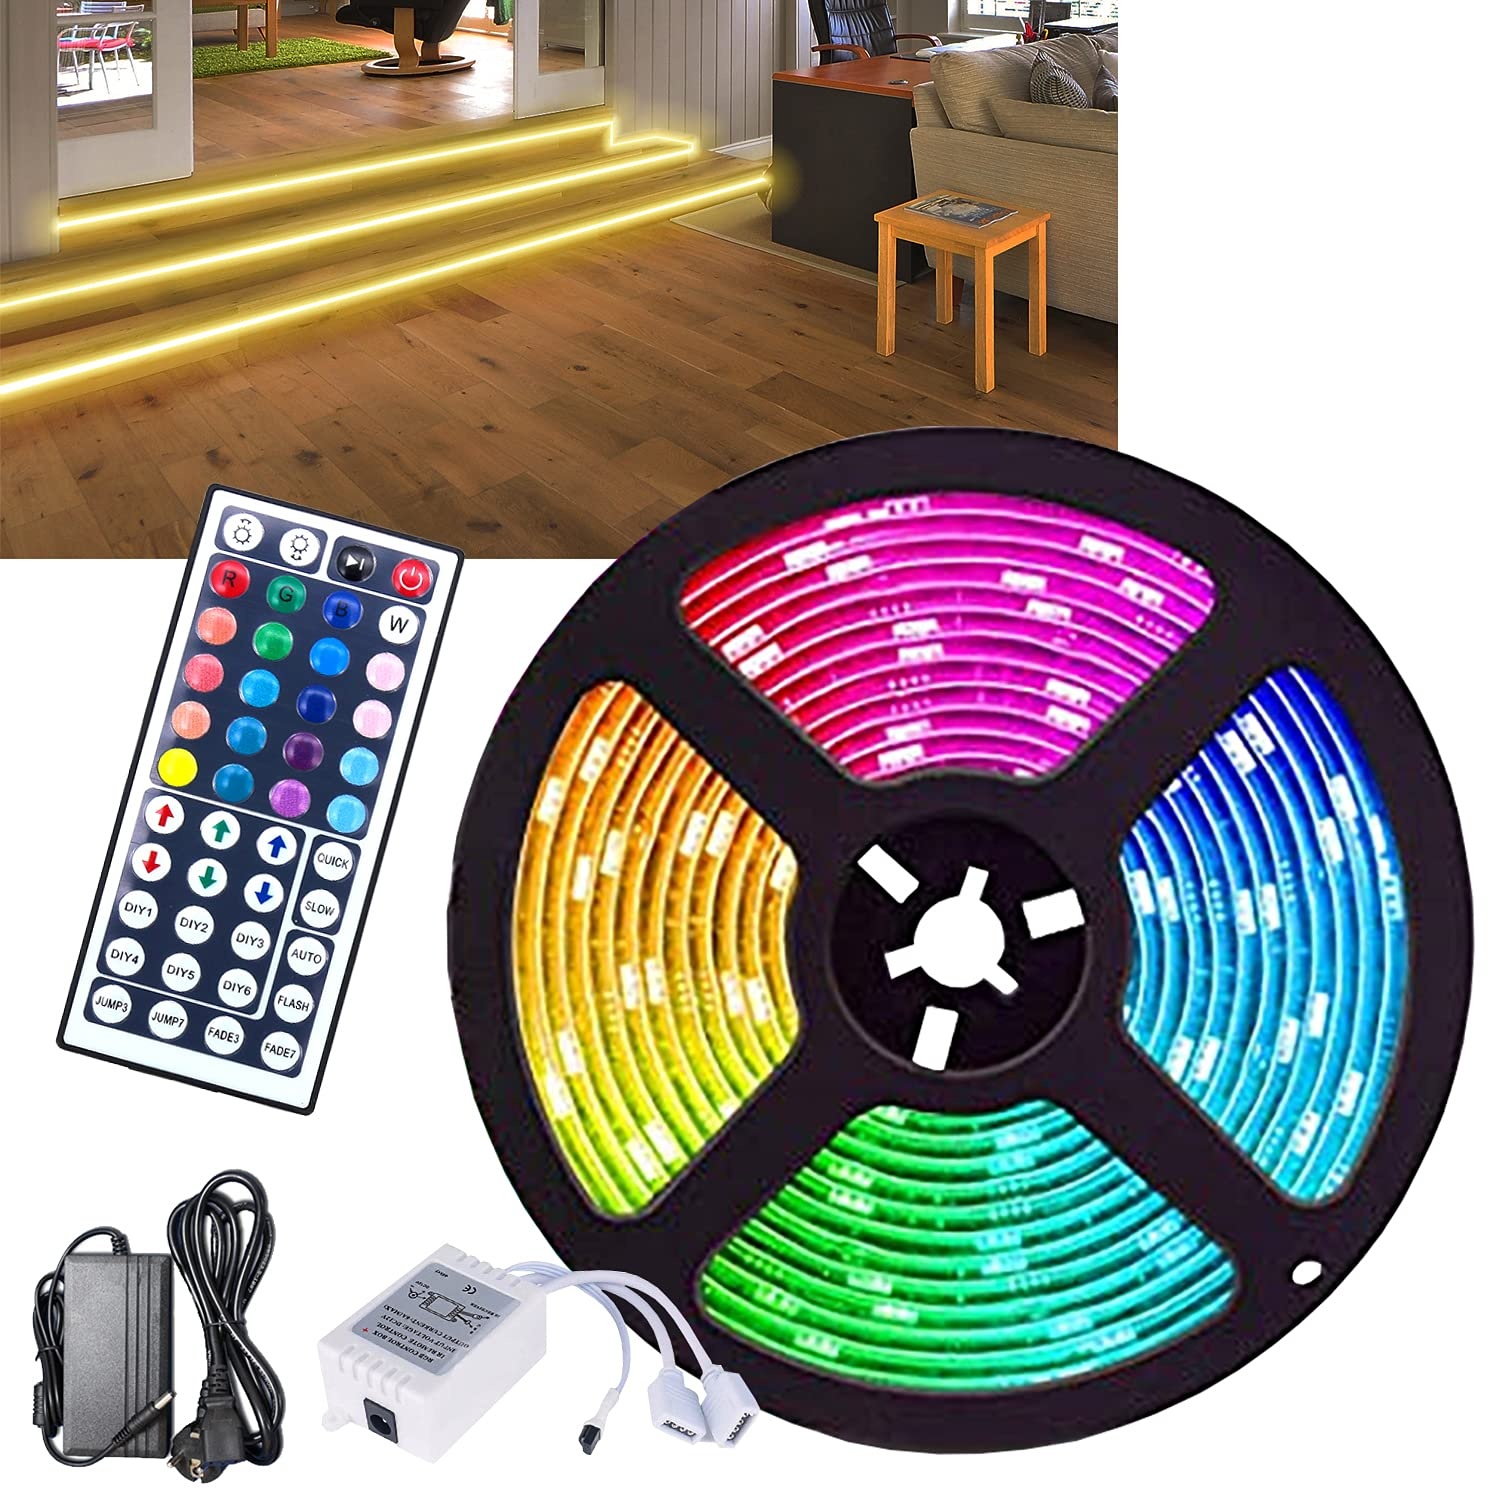 Sonnewelt LED Strip 15m, RGB LED Streifen, Farbwechsel LED Band mit Fernbedienung, für die Beleuchtung von Haus, Party, Küche (5 * 3M)